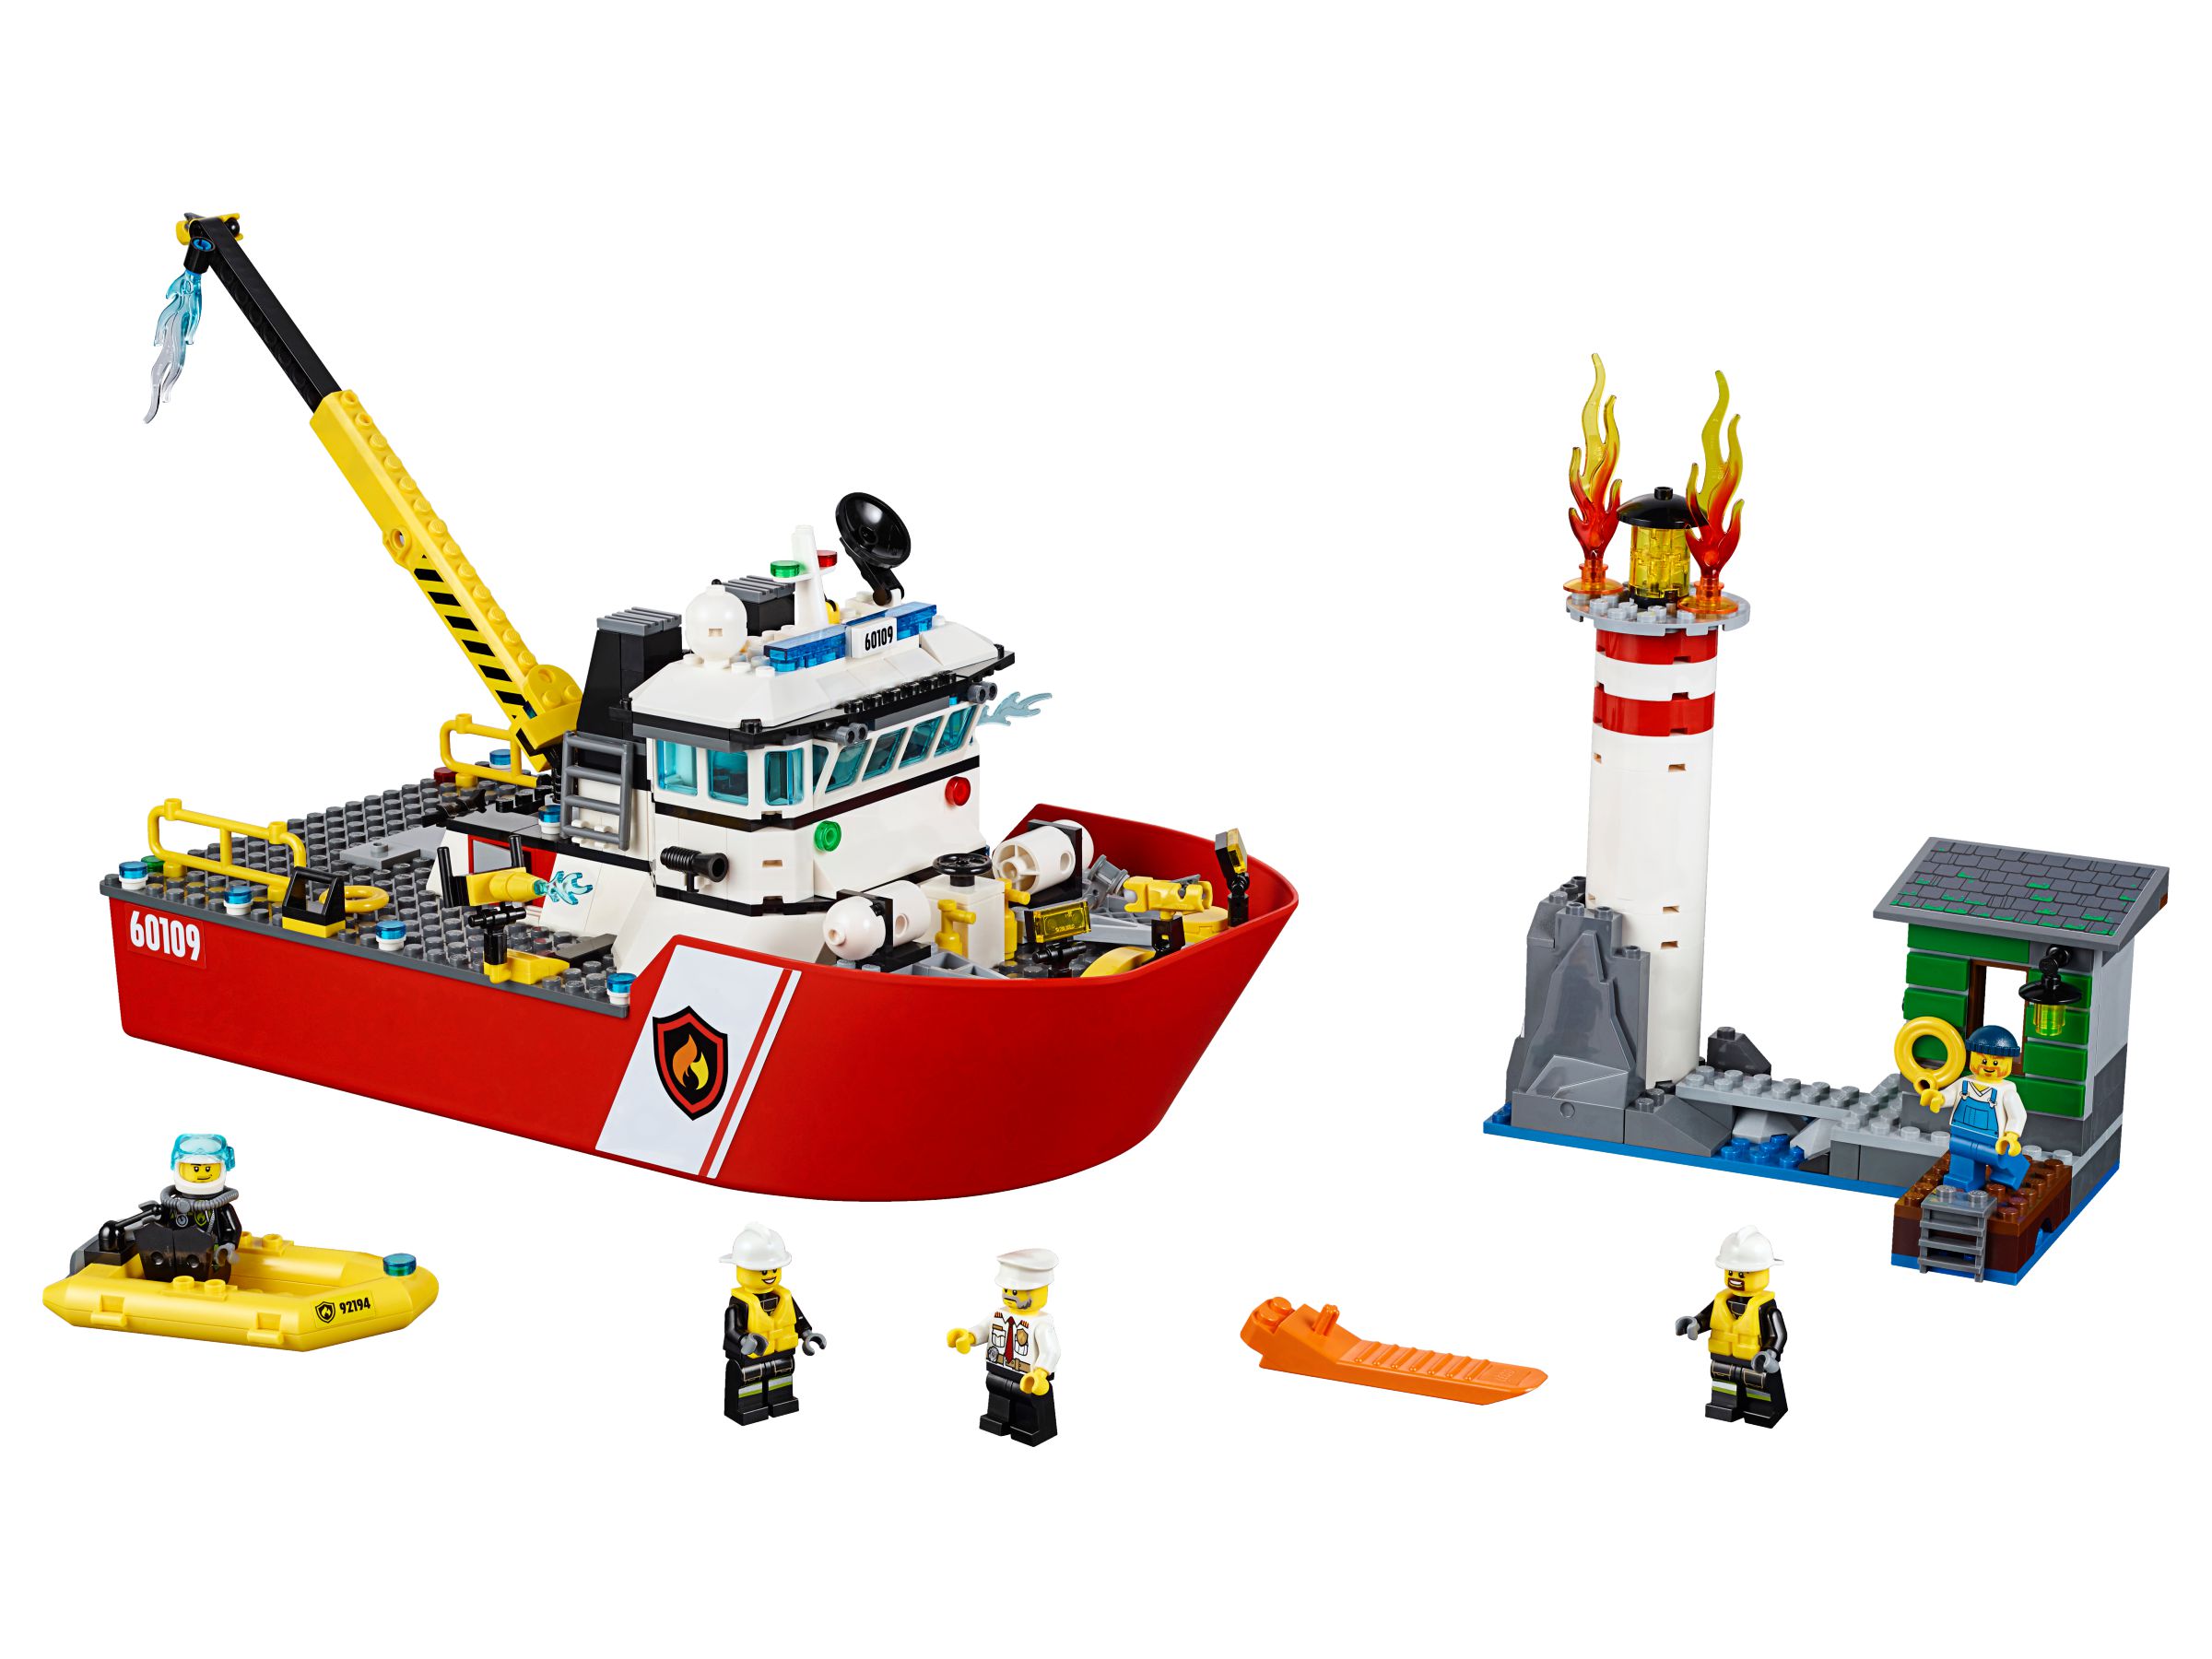 LEGO City 60109 Feuerwehrschiff LEGO_60109.jpg